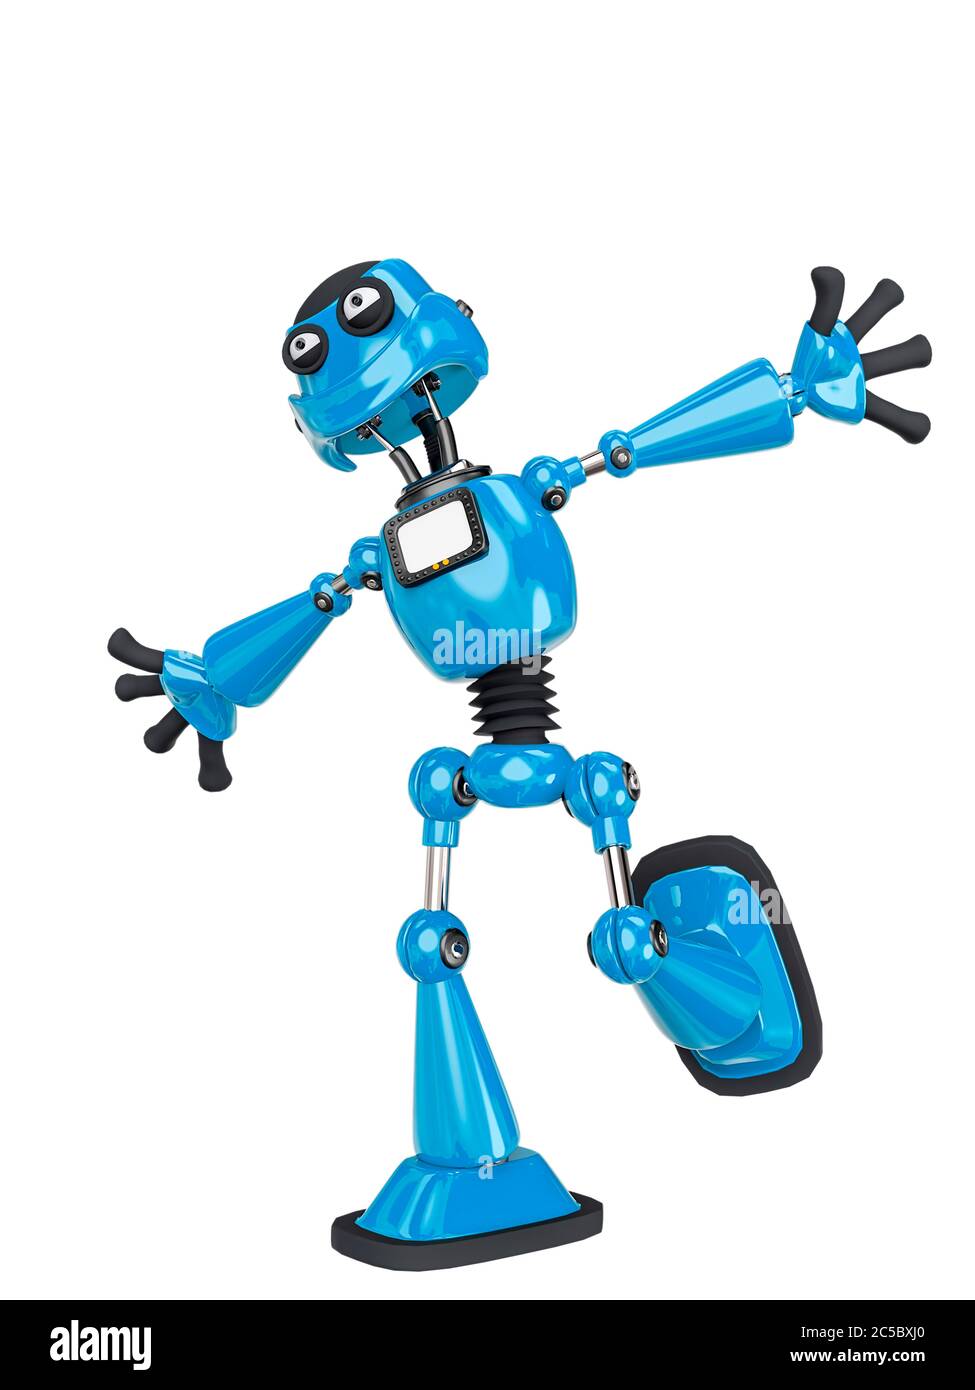 Roboter Cartoon läuft kostenlos, 3d-Illustration Stockfotografie - Alamy